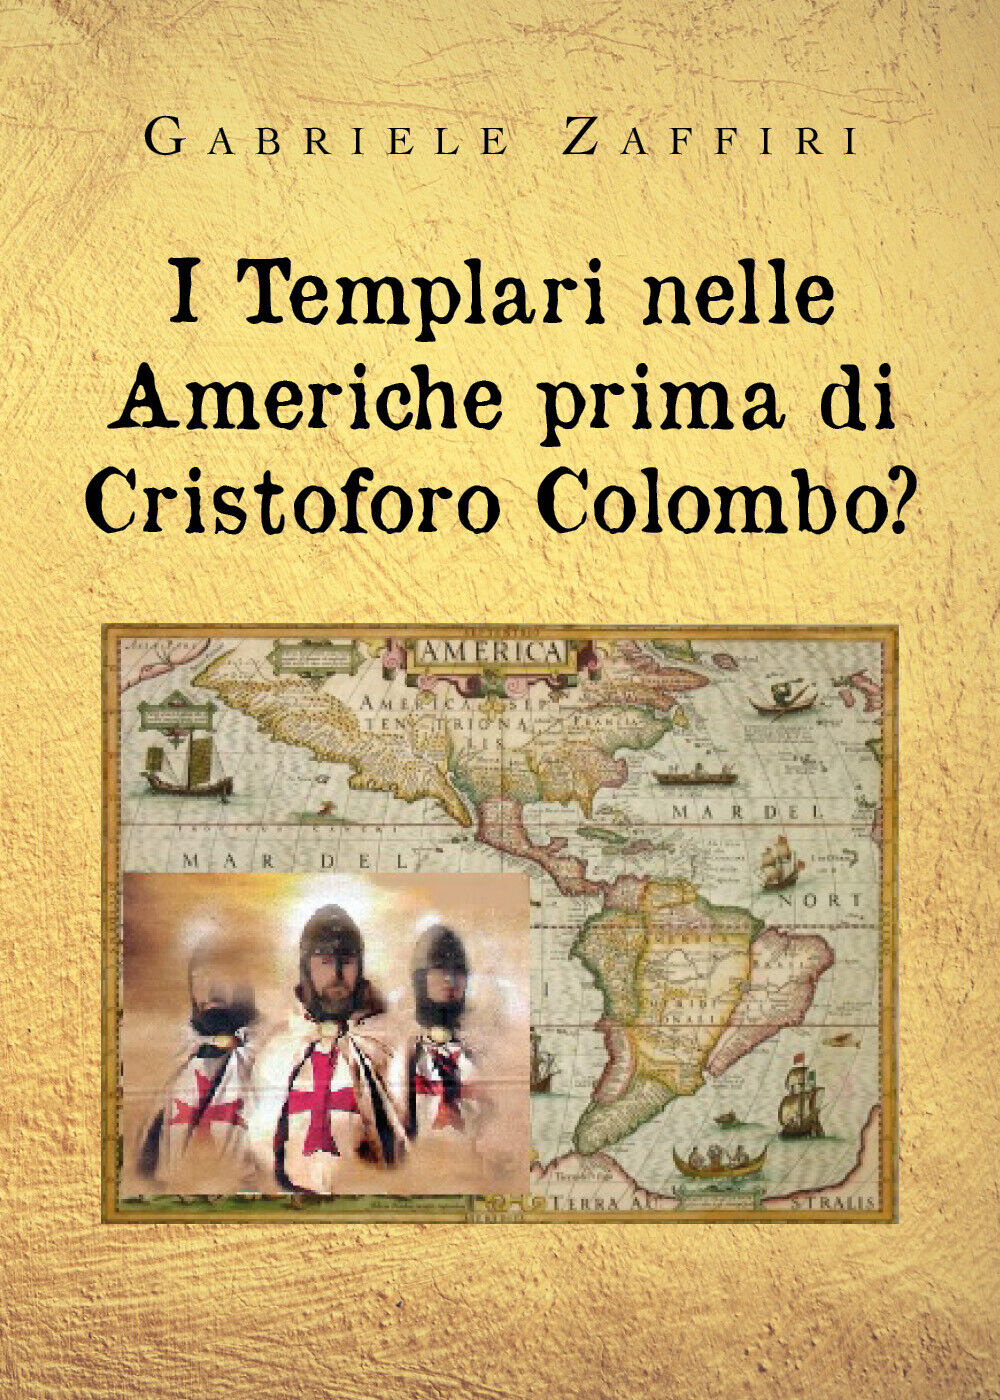 I Templari nelle Americhe prima di Cristoforo Colombo? di Gabriele Zaffiri,  202